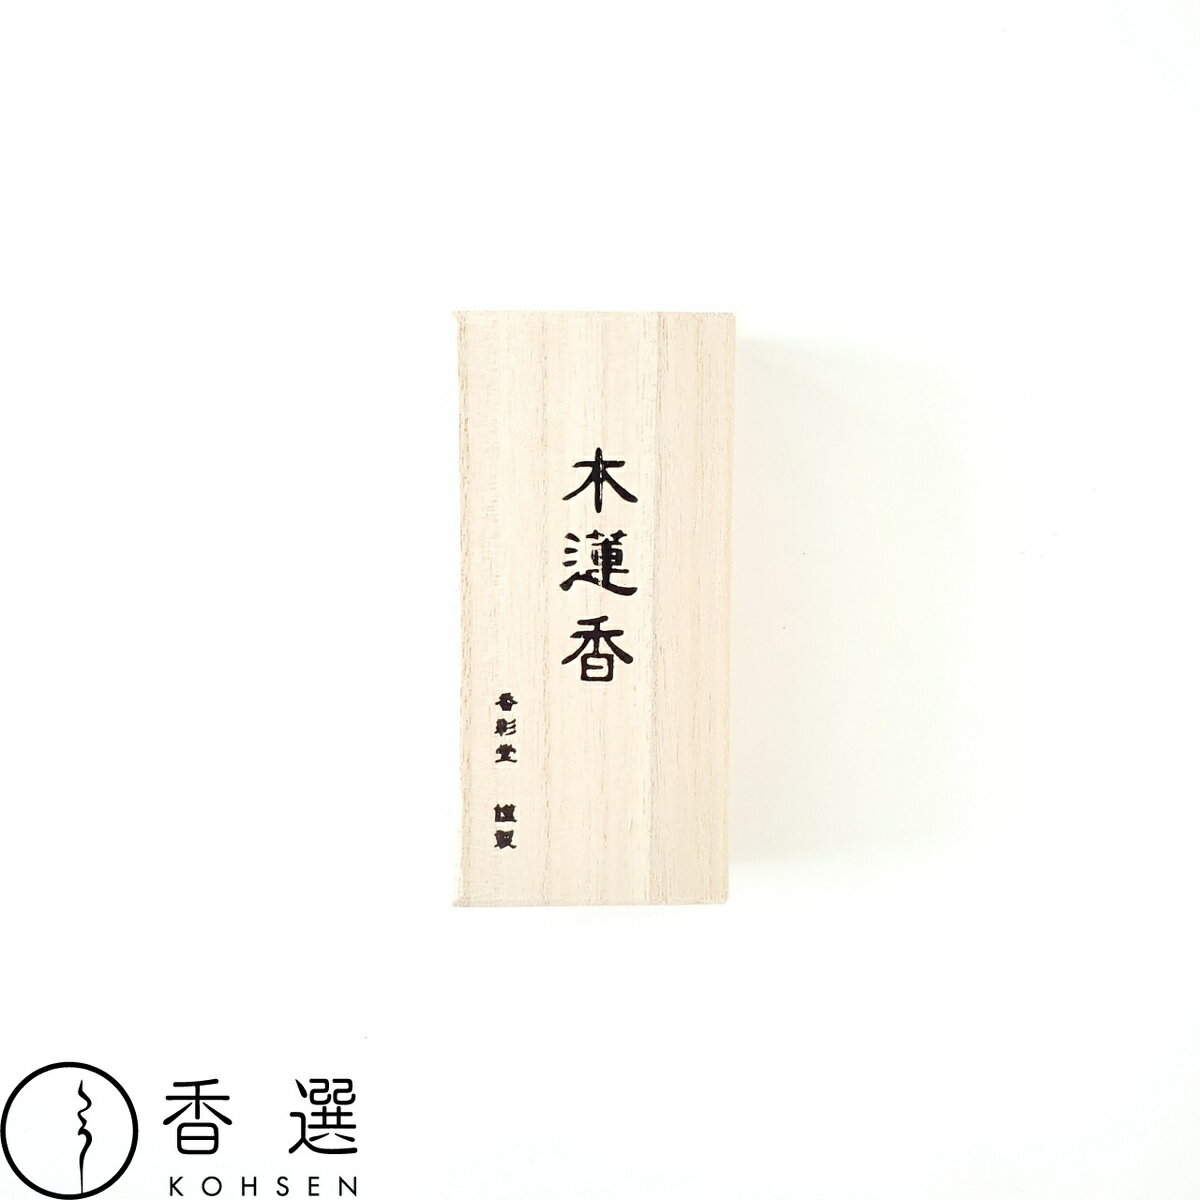 香彩堂 古都の香 木蓮香 スティック型 お香 お線香 インセンス 京都 日本製